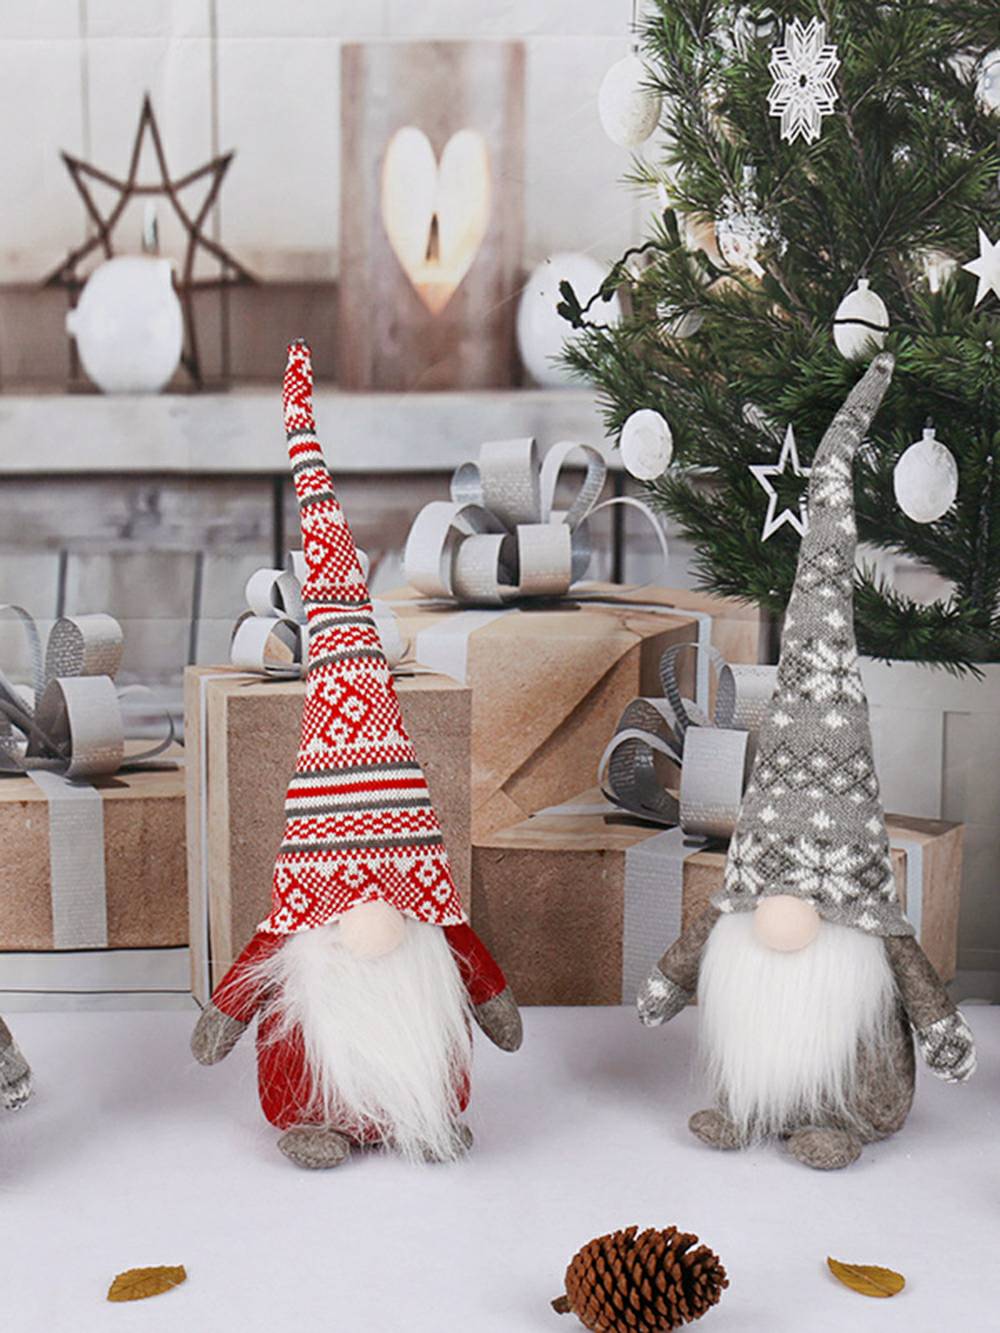 クリスマスエルフ水玉スノーフレークぬいぐるみボーダー人形暖炉装飾キャラクター